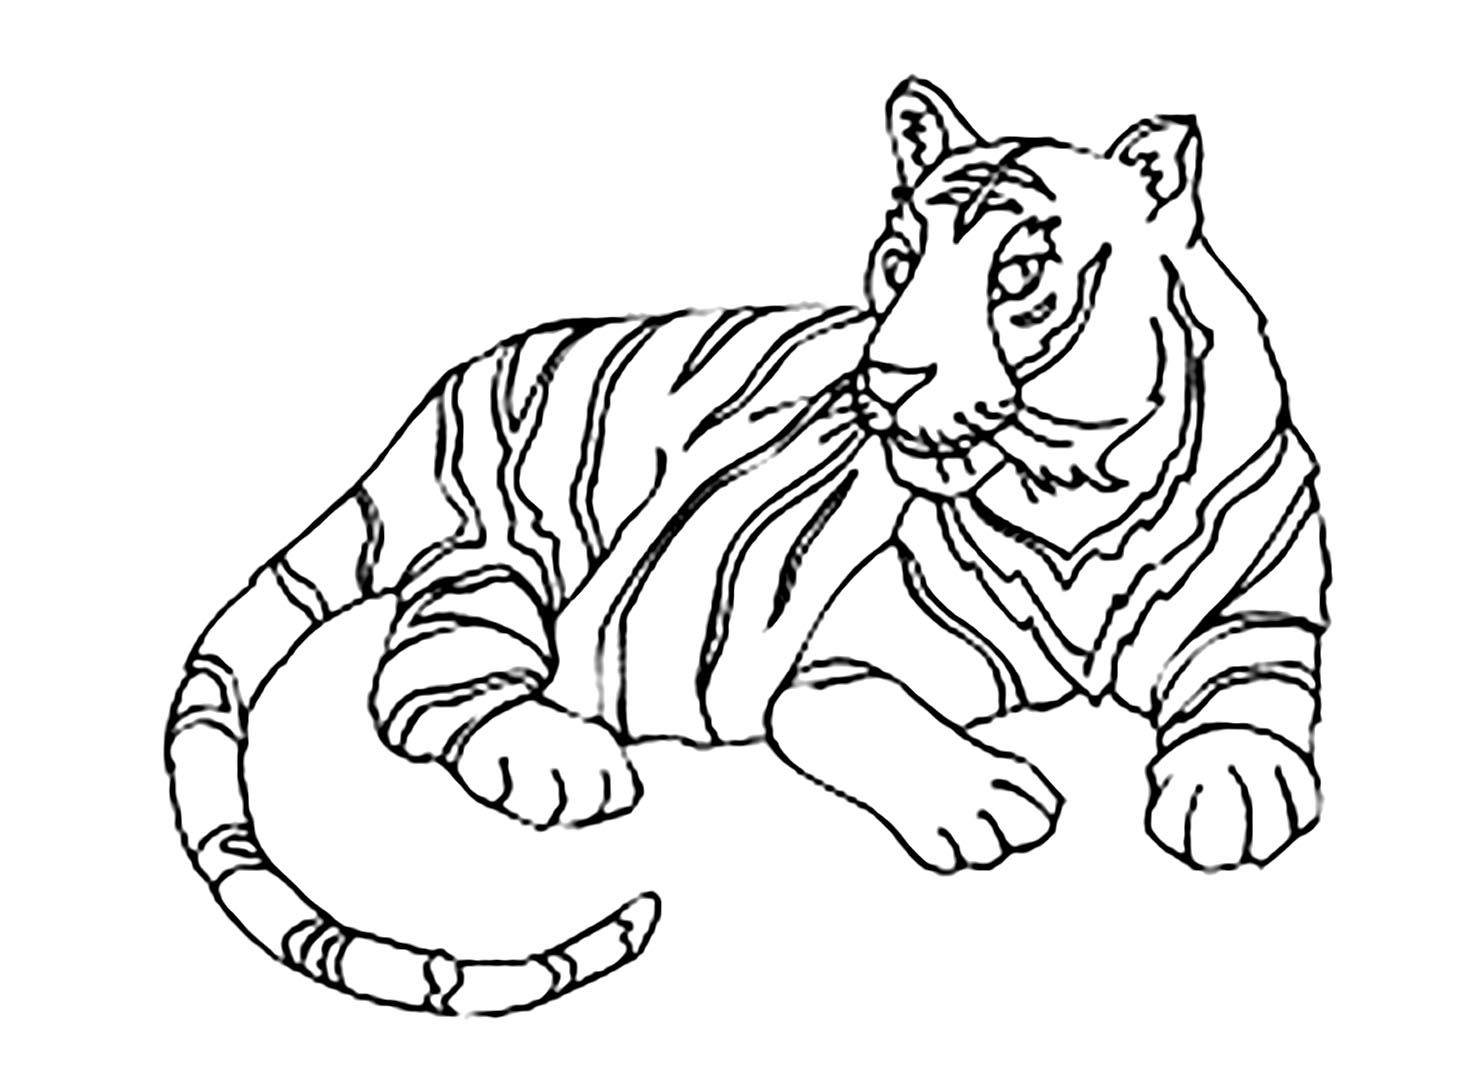 Joli coloriage de tigre simple pour enfants